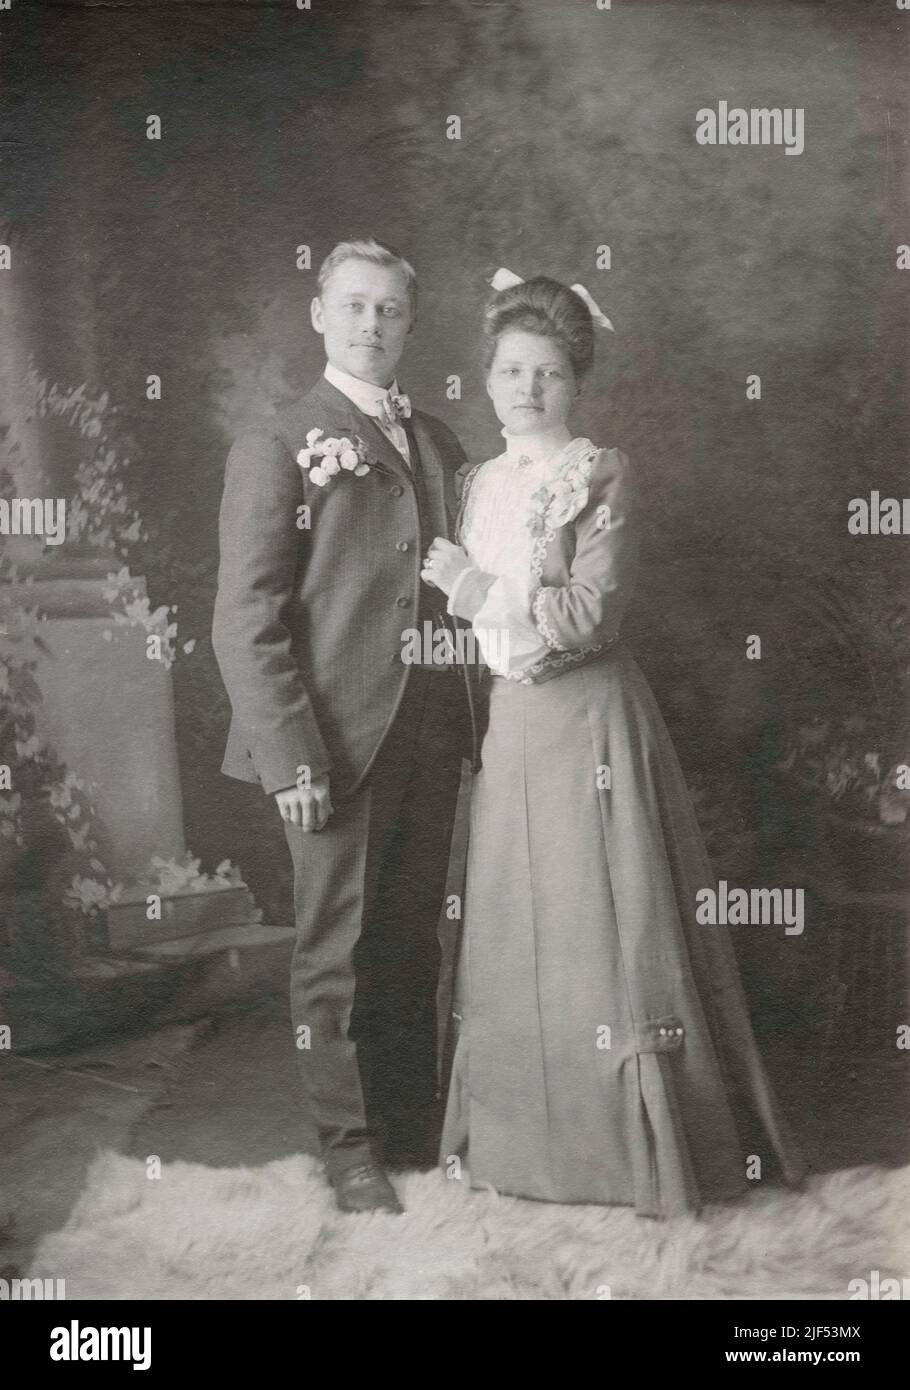 Antike Fotografie von einem jungen Ehepaar aus dem Jahr 1890s in oder in der Nähe von Fitchburg, Massachusetts, USA. Das gleiche Paar erscheint unverheiratet ohne Ringe in Alamy Foto #2JF53KY. QUELLE: ORIGINALE FOTOKARTE Stockfoto